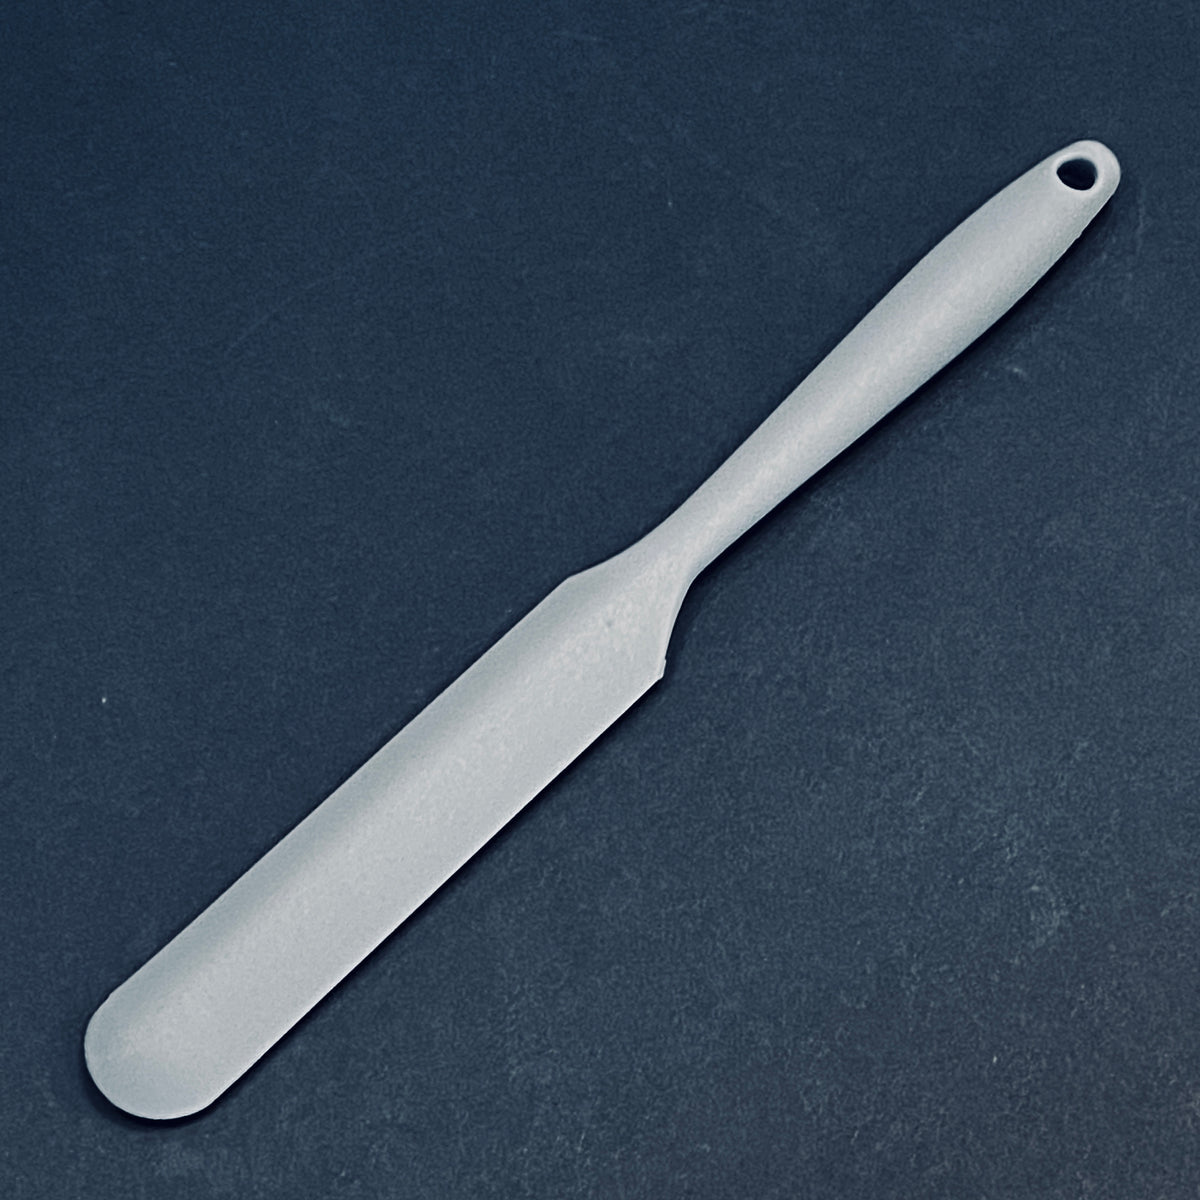 Stir stick, silicone, white, 4-3/4 x 1/3 inches. Sold per 8-piece